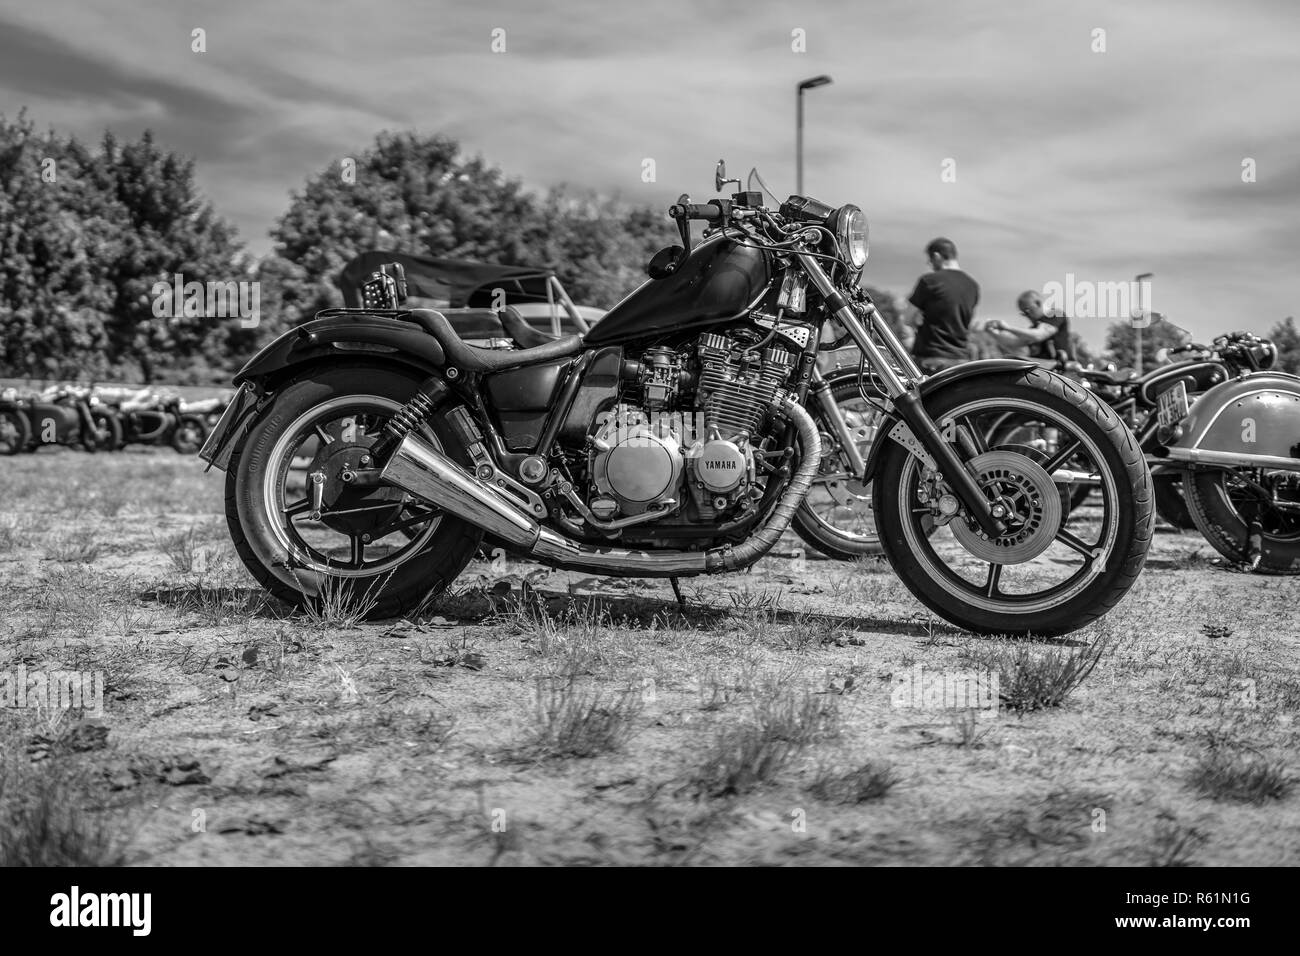 PAAREN IM GLIEN, Deutschland - 19. MAI 2018: Motorrad Yamaha XVS 650 Drag Star. Schwarz und Weiß. Oldtimer-show 2018 sterben. Stockfoto